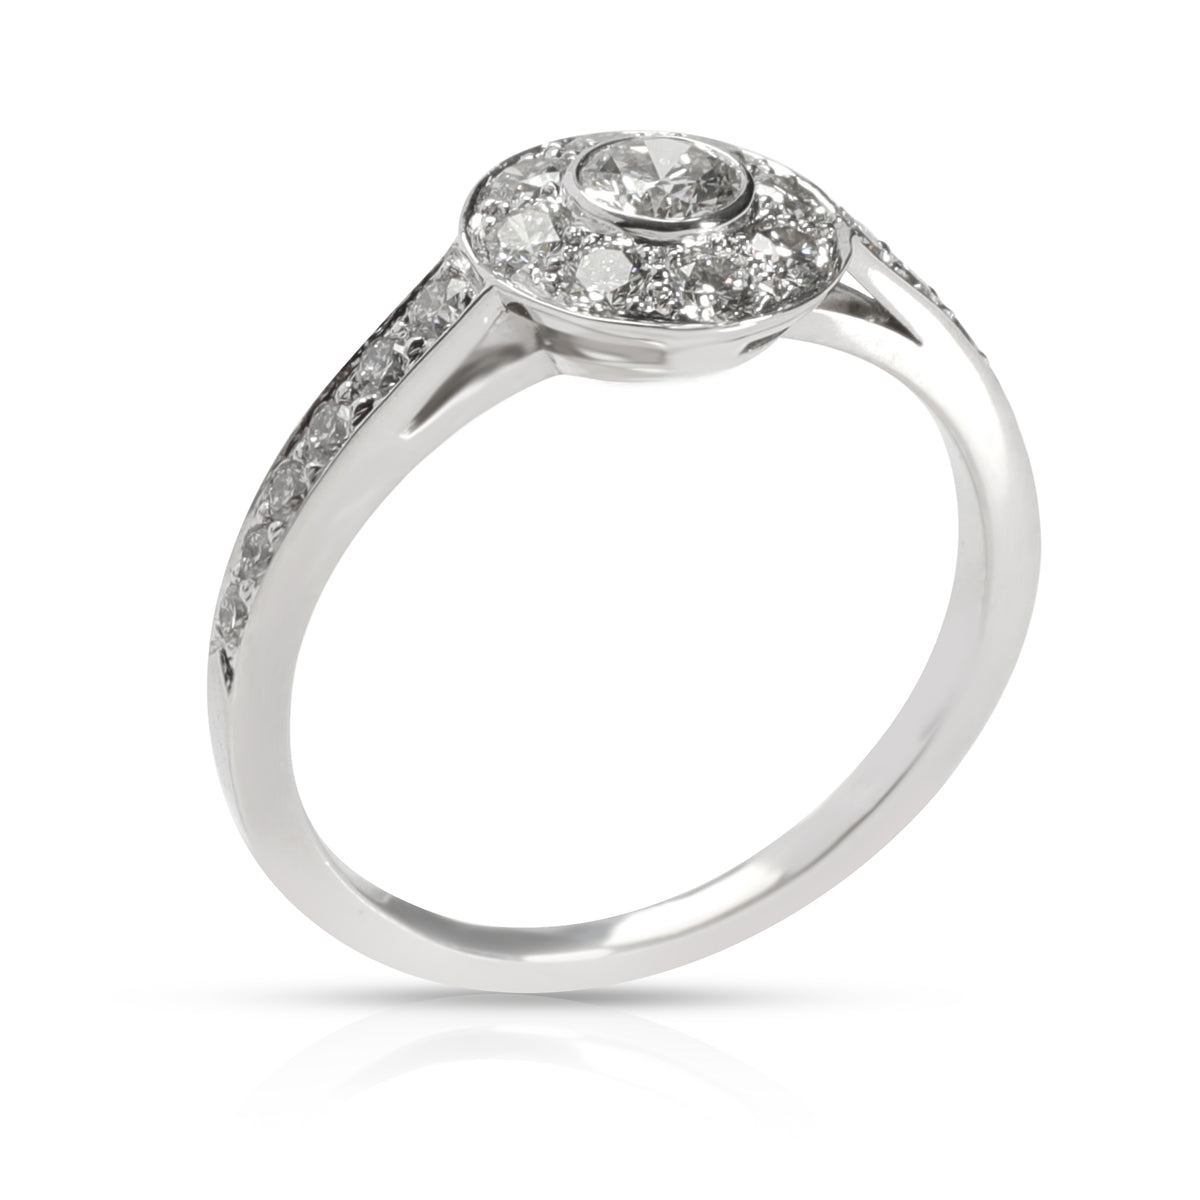 Tiffany & Co. Tiffany Circlet Diamond Ring in  Platinum 0.76 CTW